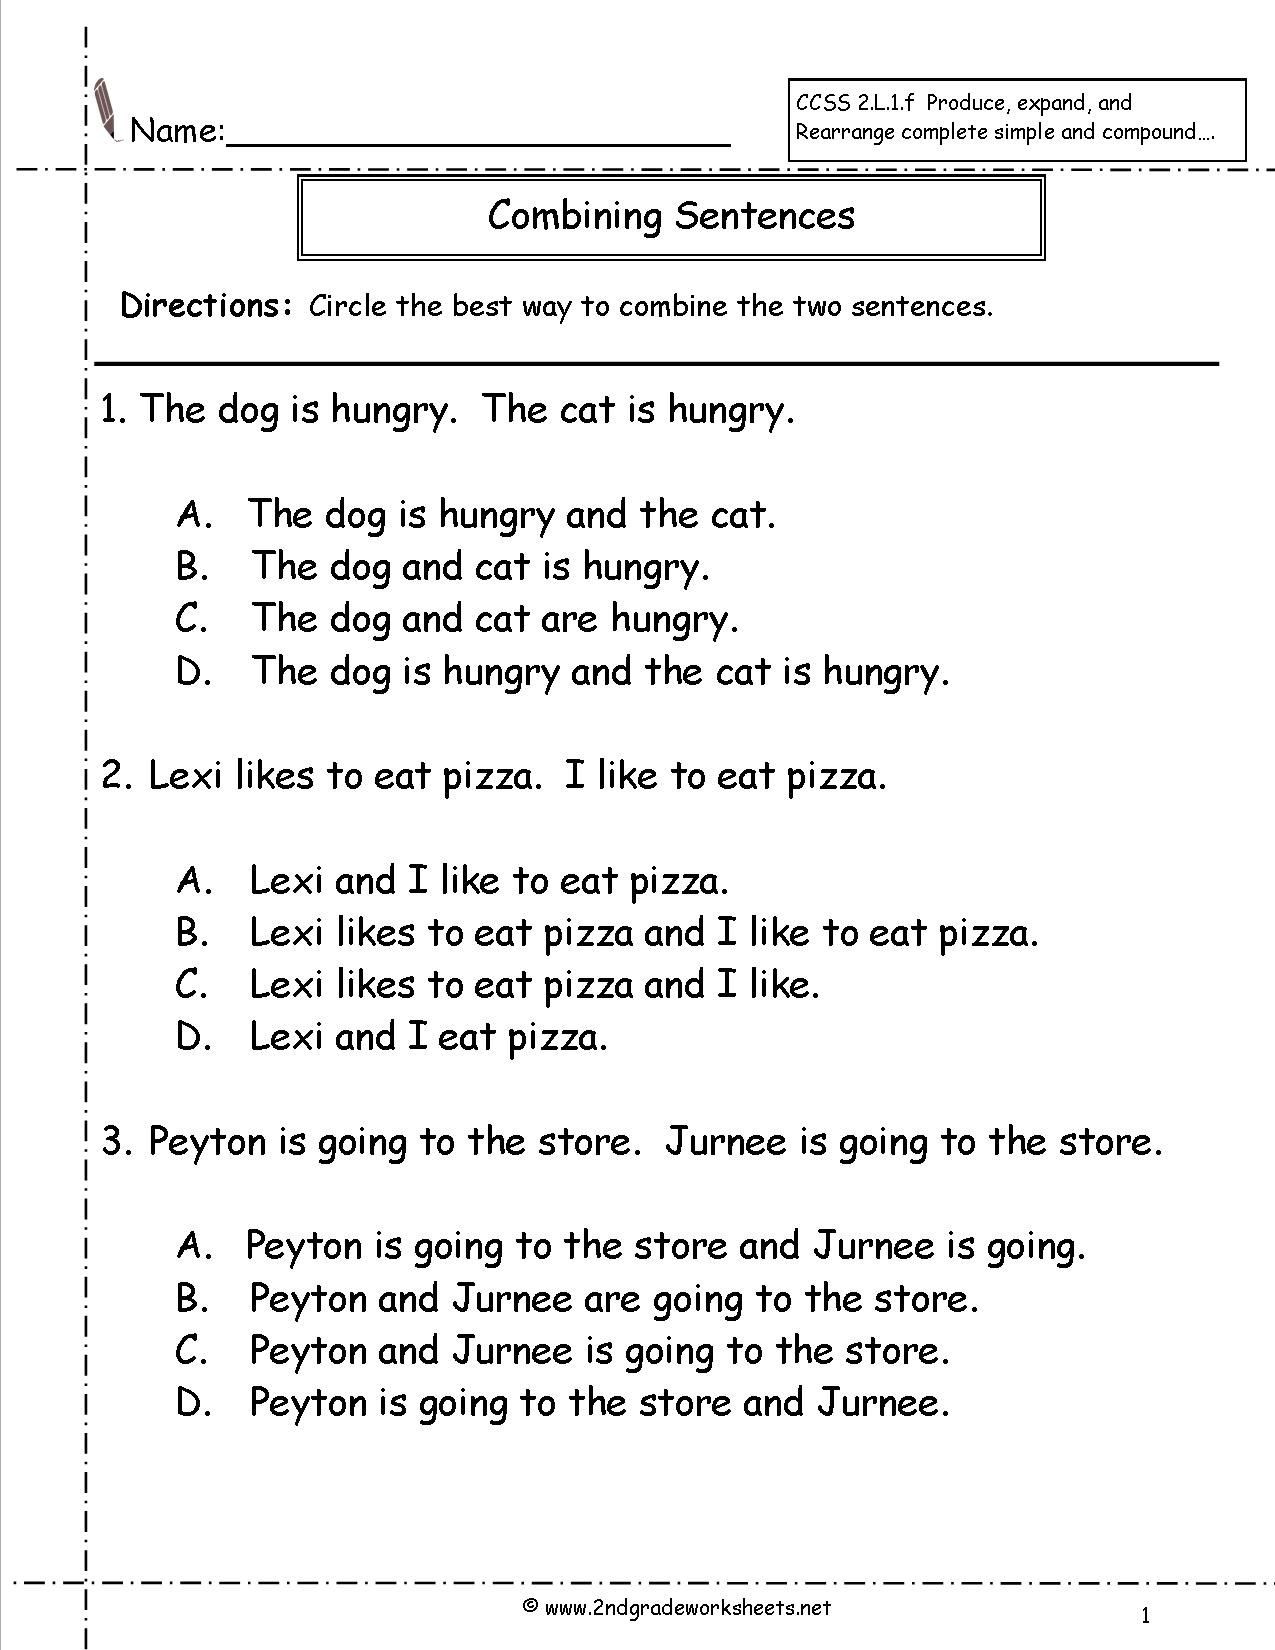 The Sentences Worksheet Class 6